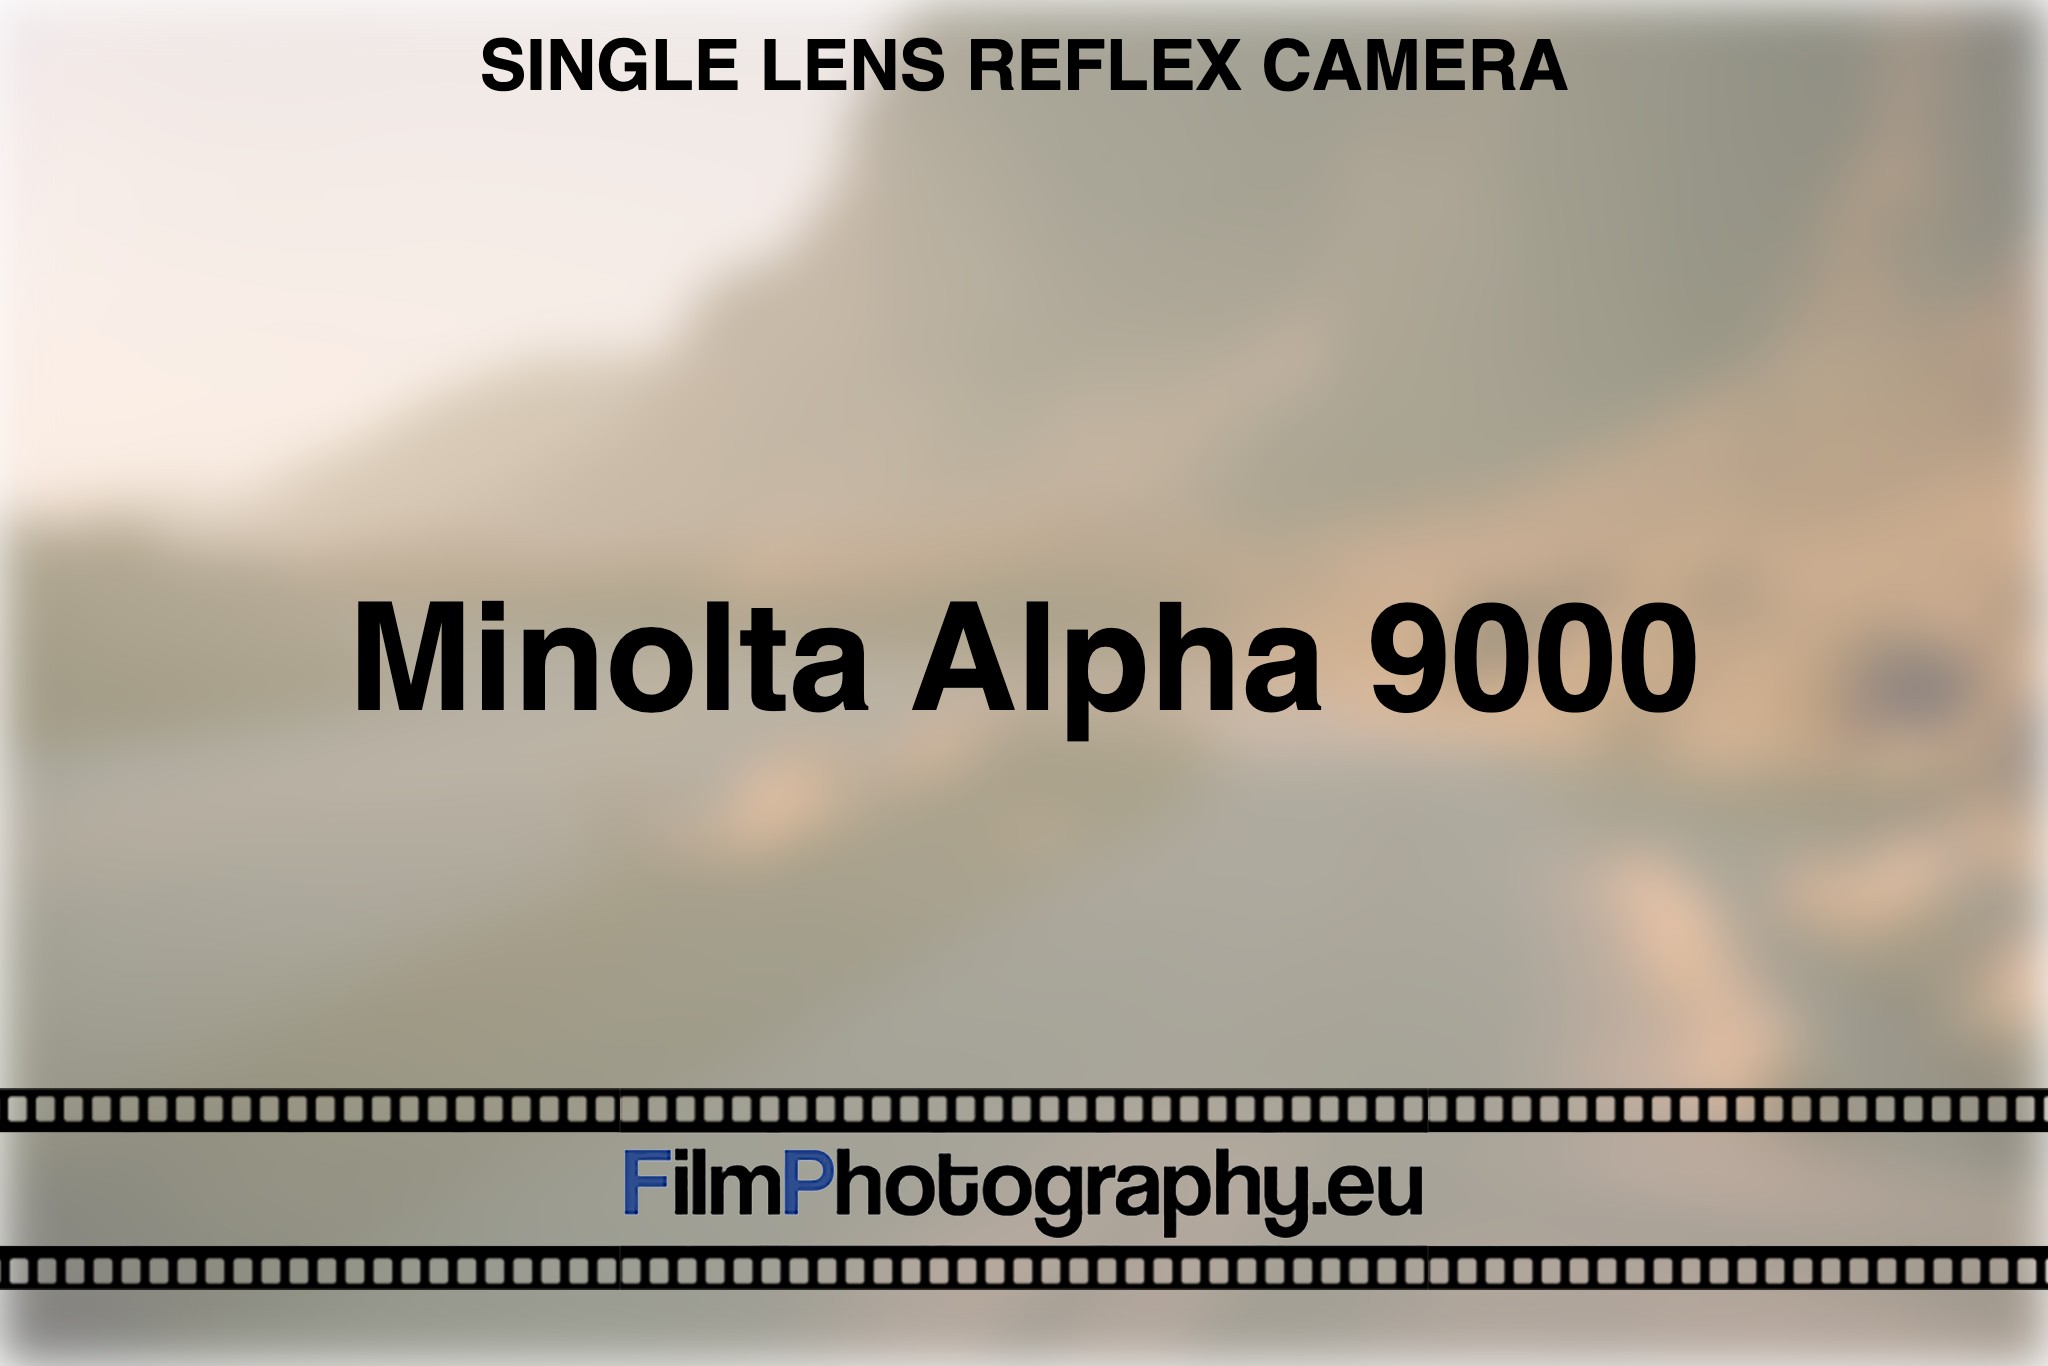 minolta-alpha-9000-single-lens-reflex-camera-bnv